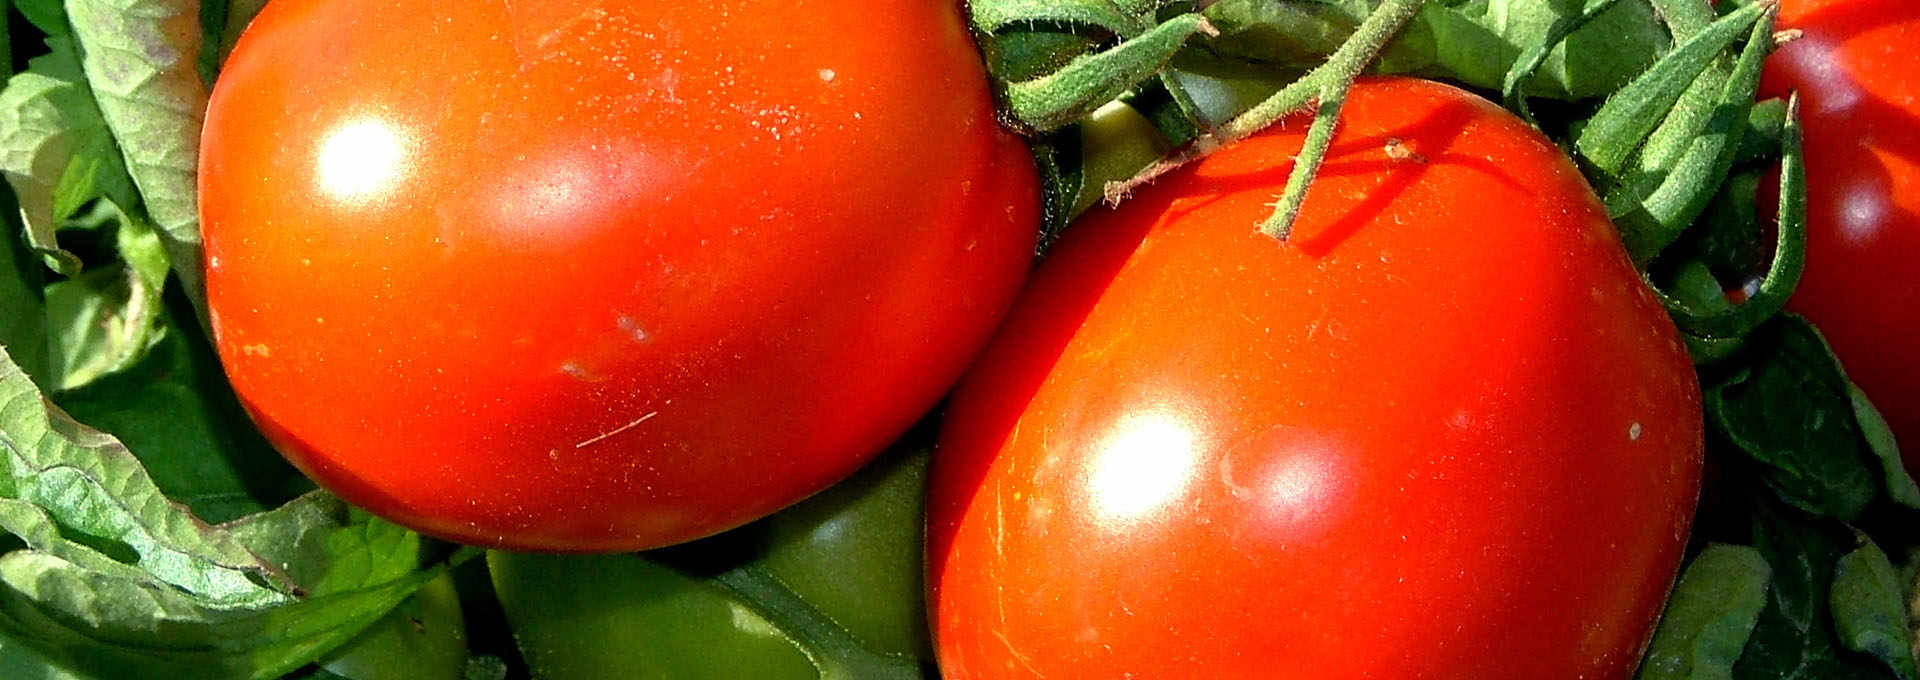 The Siccagno Tomato